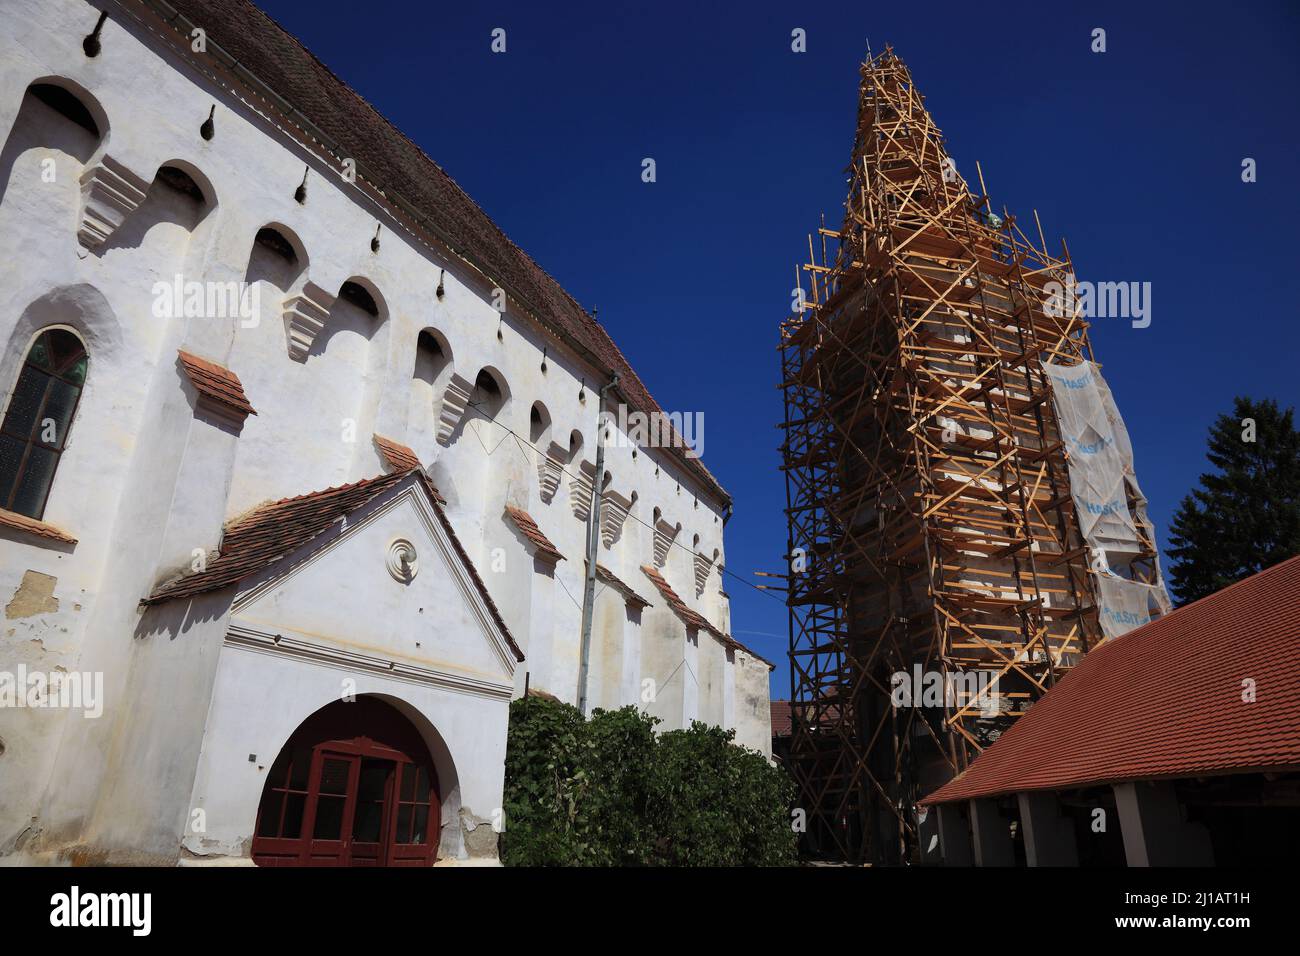 Renovierungsarbeiten am Unesco Weltkulturerbe, Kirchenburg von Darjiu, deutsch Ders oder Därsch, eine Gemeinde im Kreis Harghita in Siebenbürgen, Rumä Stock Photo